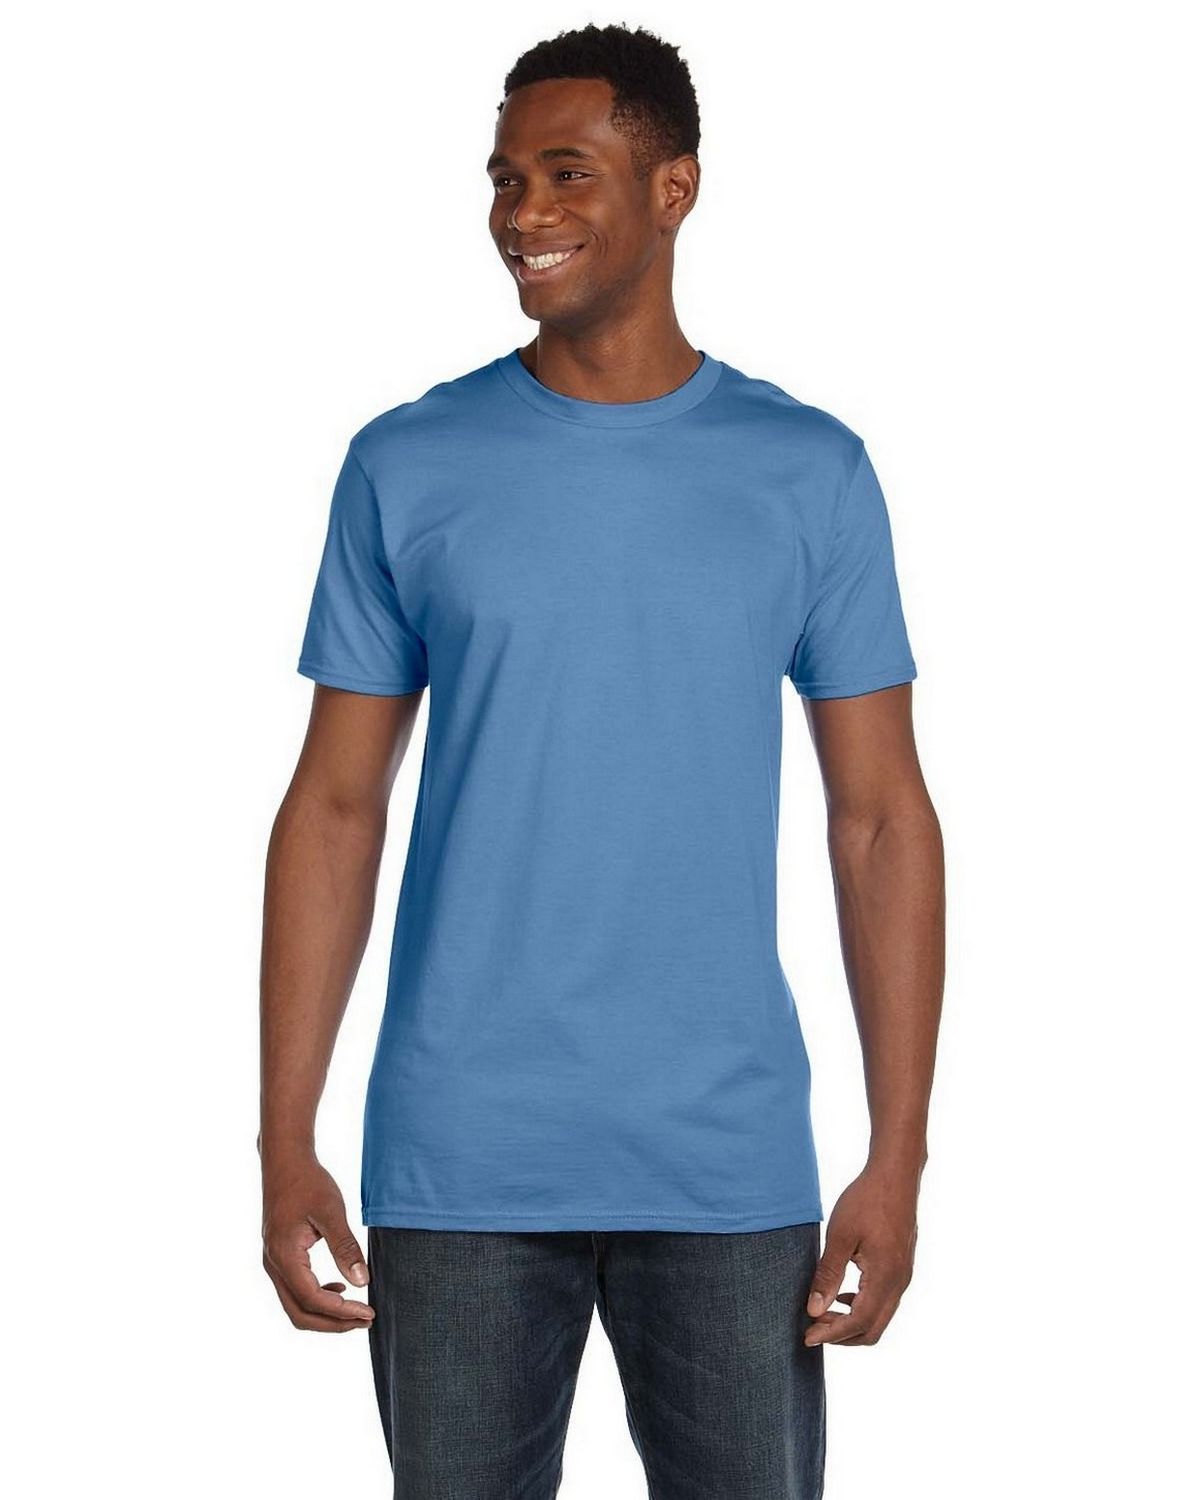 Hanes 4980 100% Ringspun Cotton T Shirt - ApparelnBags.com